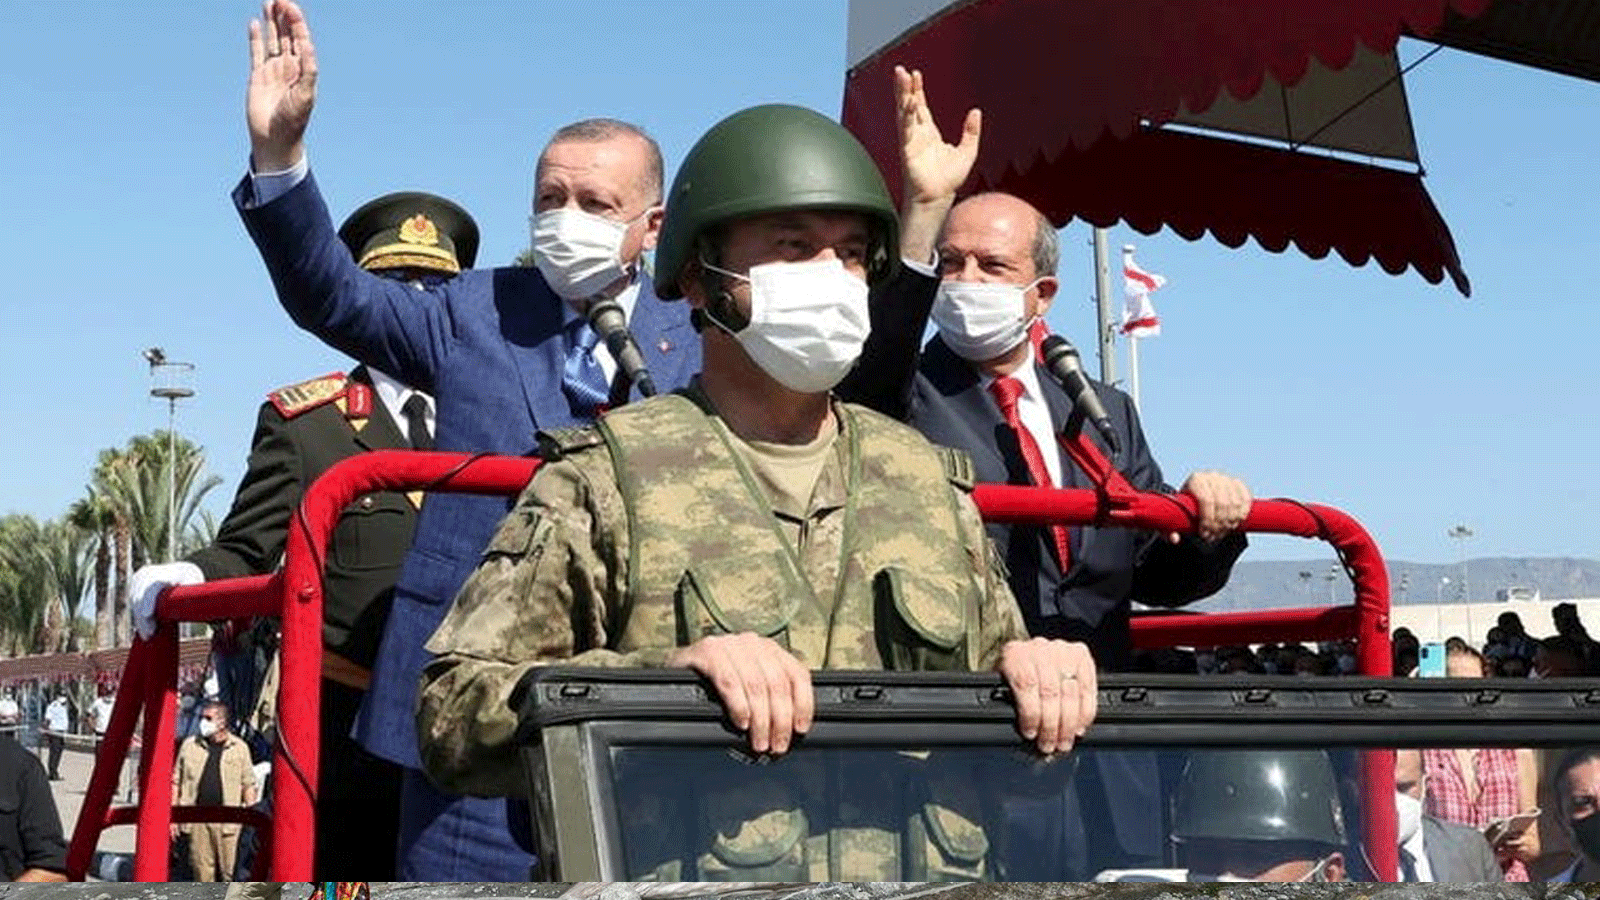 الرئيس التركي رجب طيب أردوغان وزعيم القبارصة الأتراك إرسين تتار يحضران عرضًا عسكريًا في جمهورية شمال قبرص التركية(دولة انفصالية تعترف بها تركيا فقط) 20 تموز/ يوليو 2021.